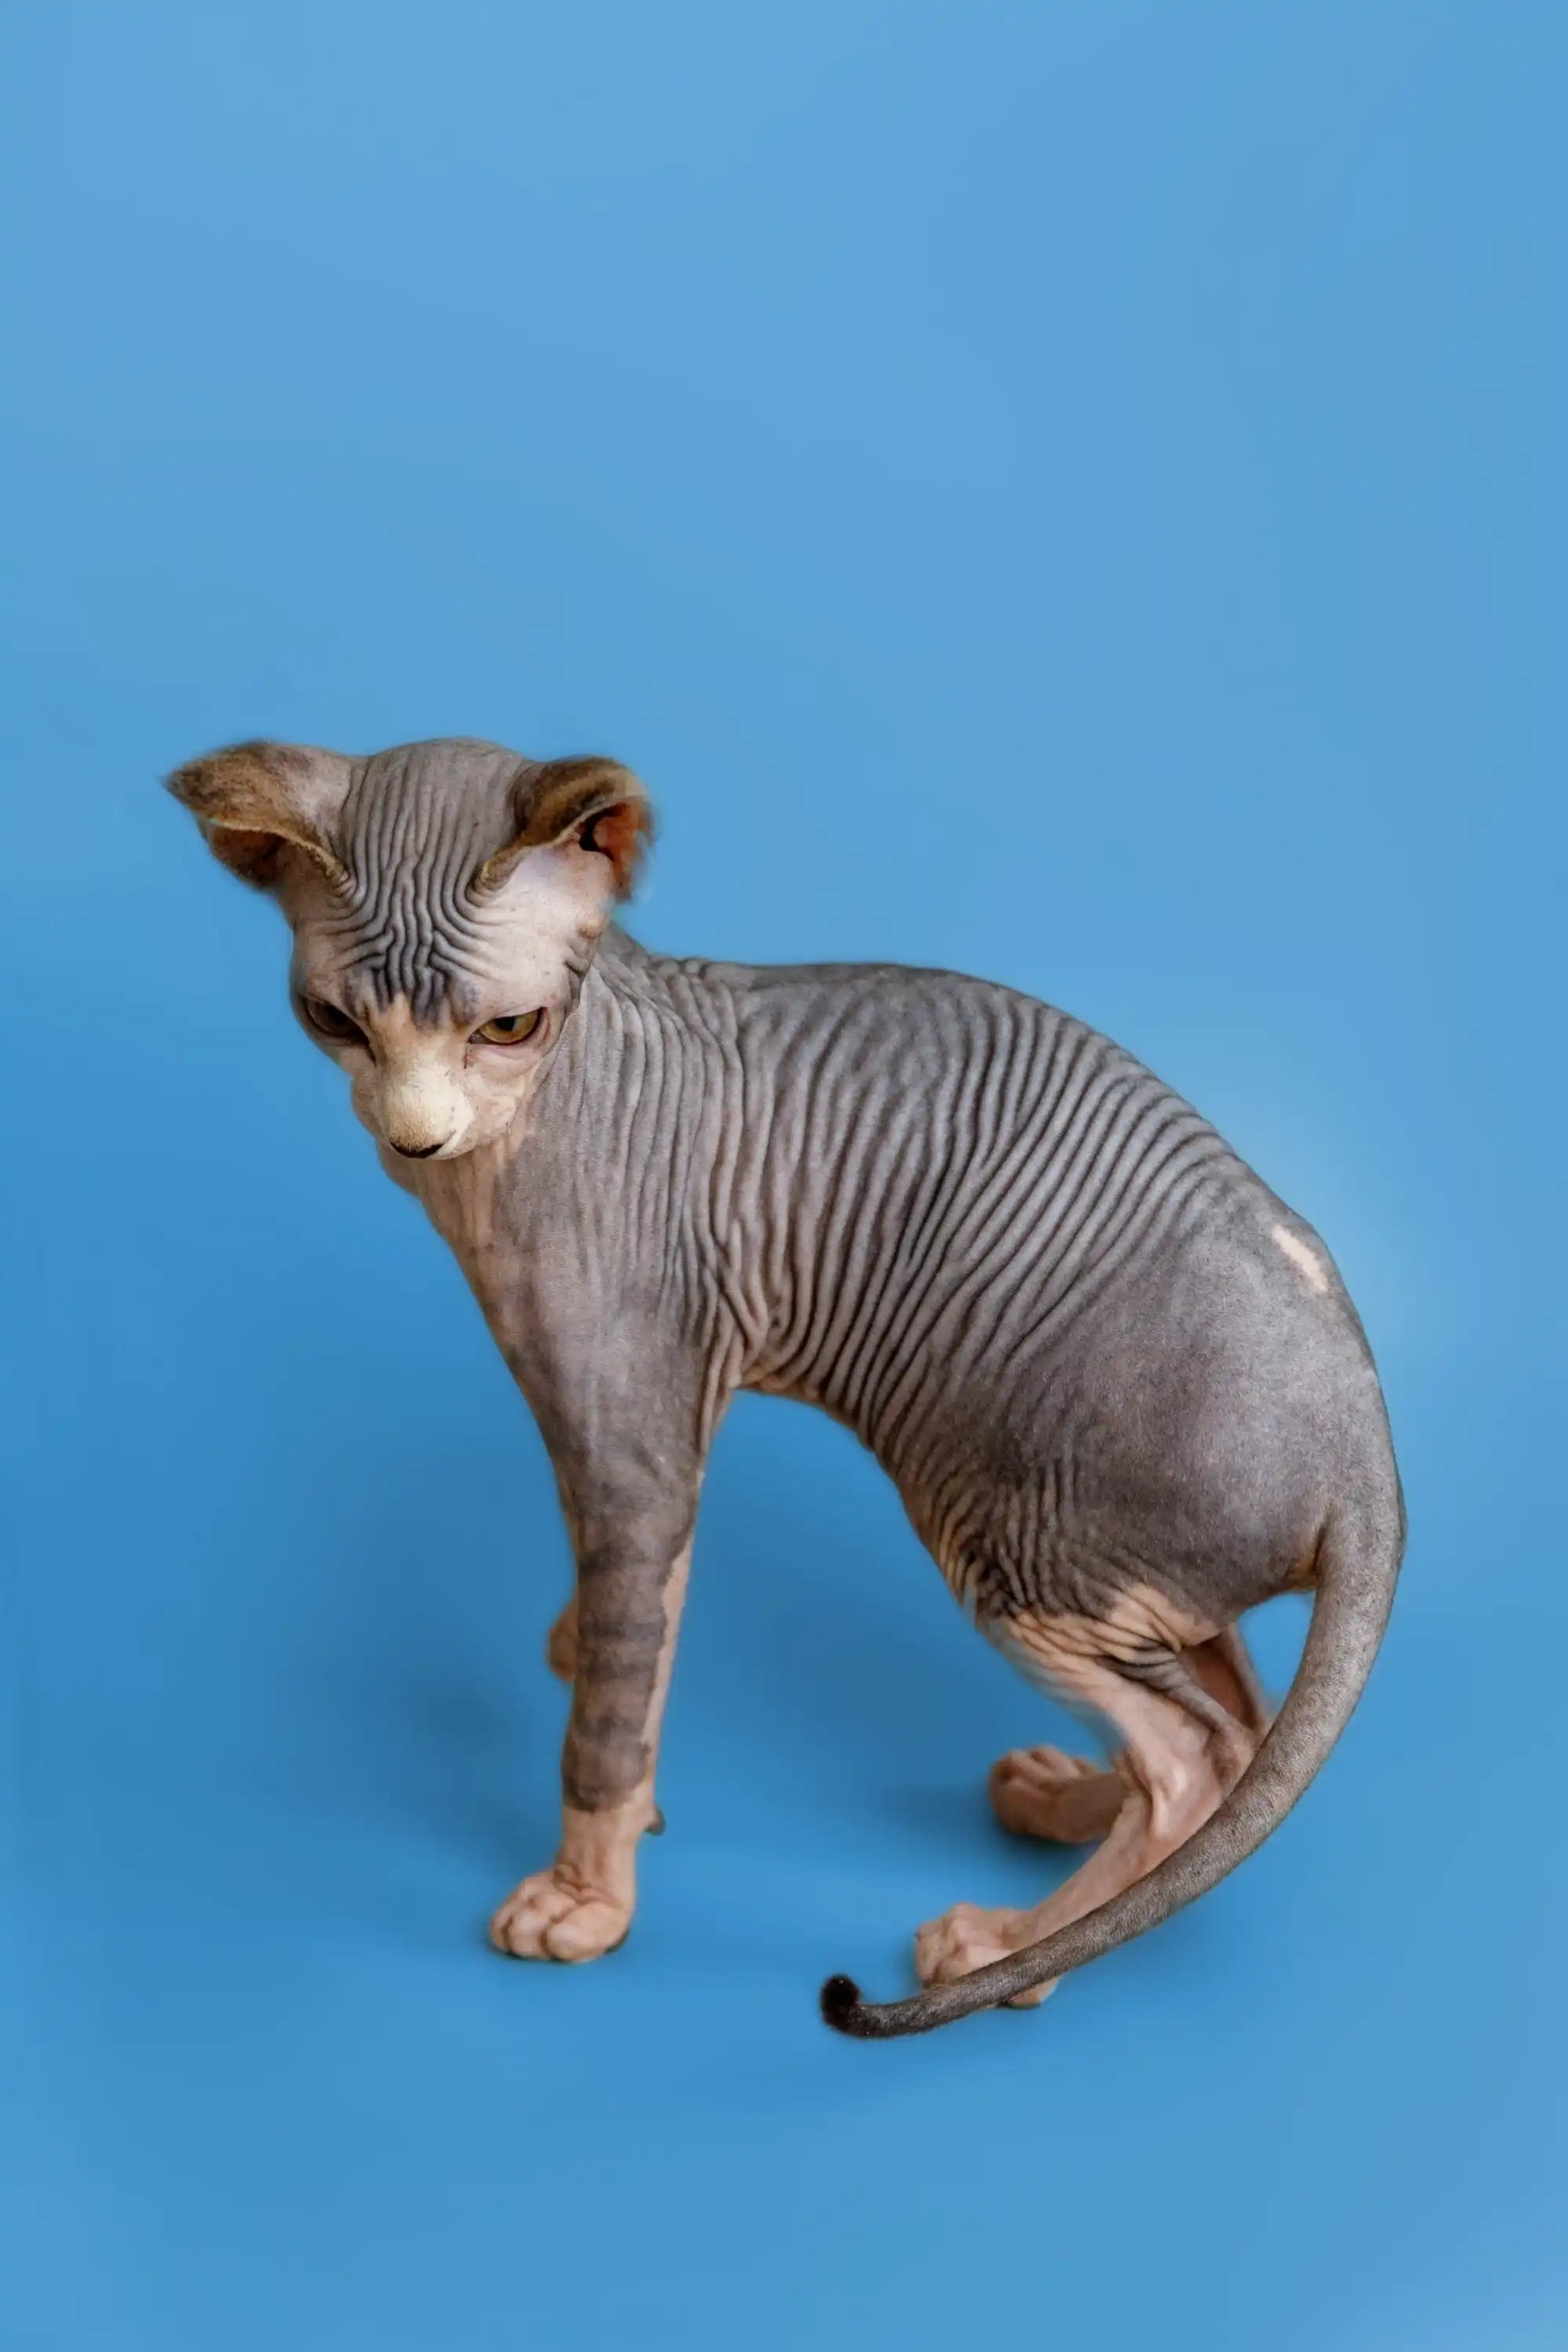 Hairless Sphynx Cats & Kittens for Sale Denny | Kitten